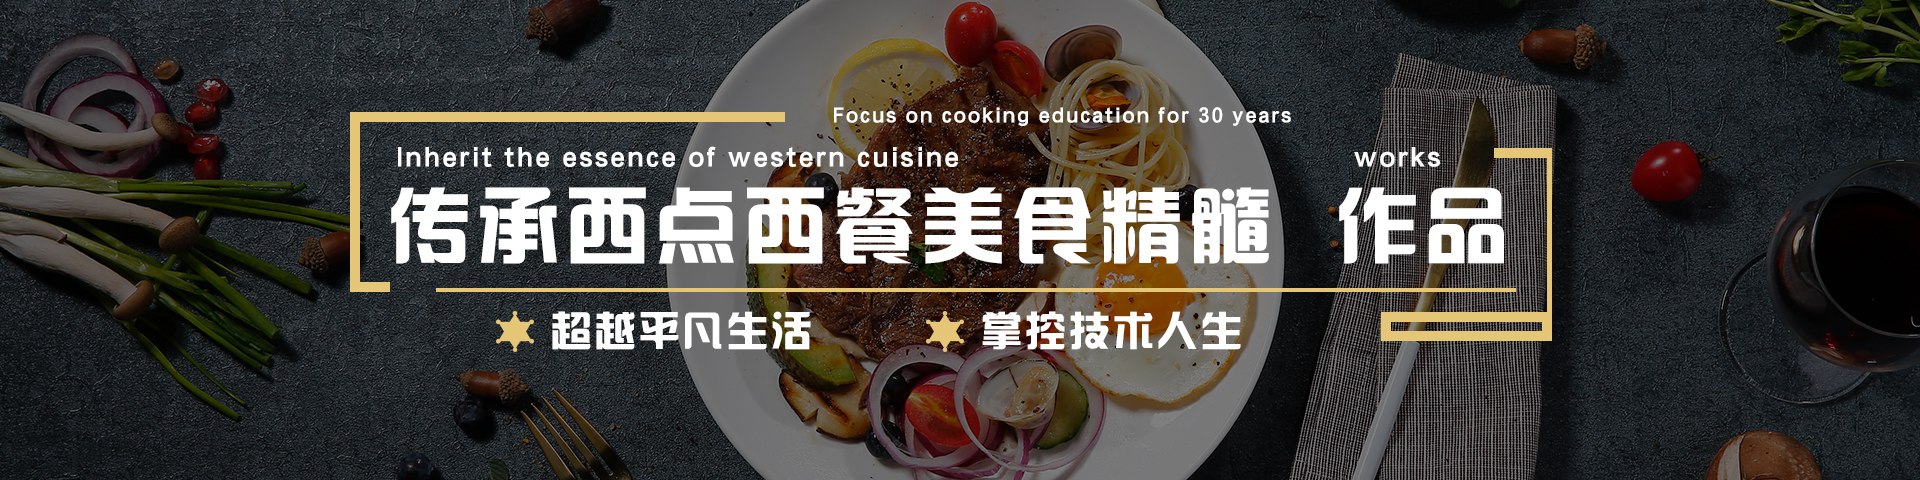 作品赏析_西点西餐学院_天津新东方烹饪学校